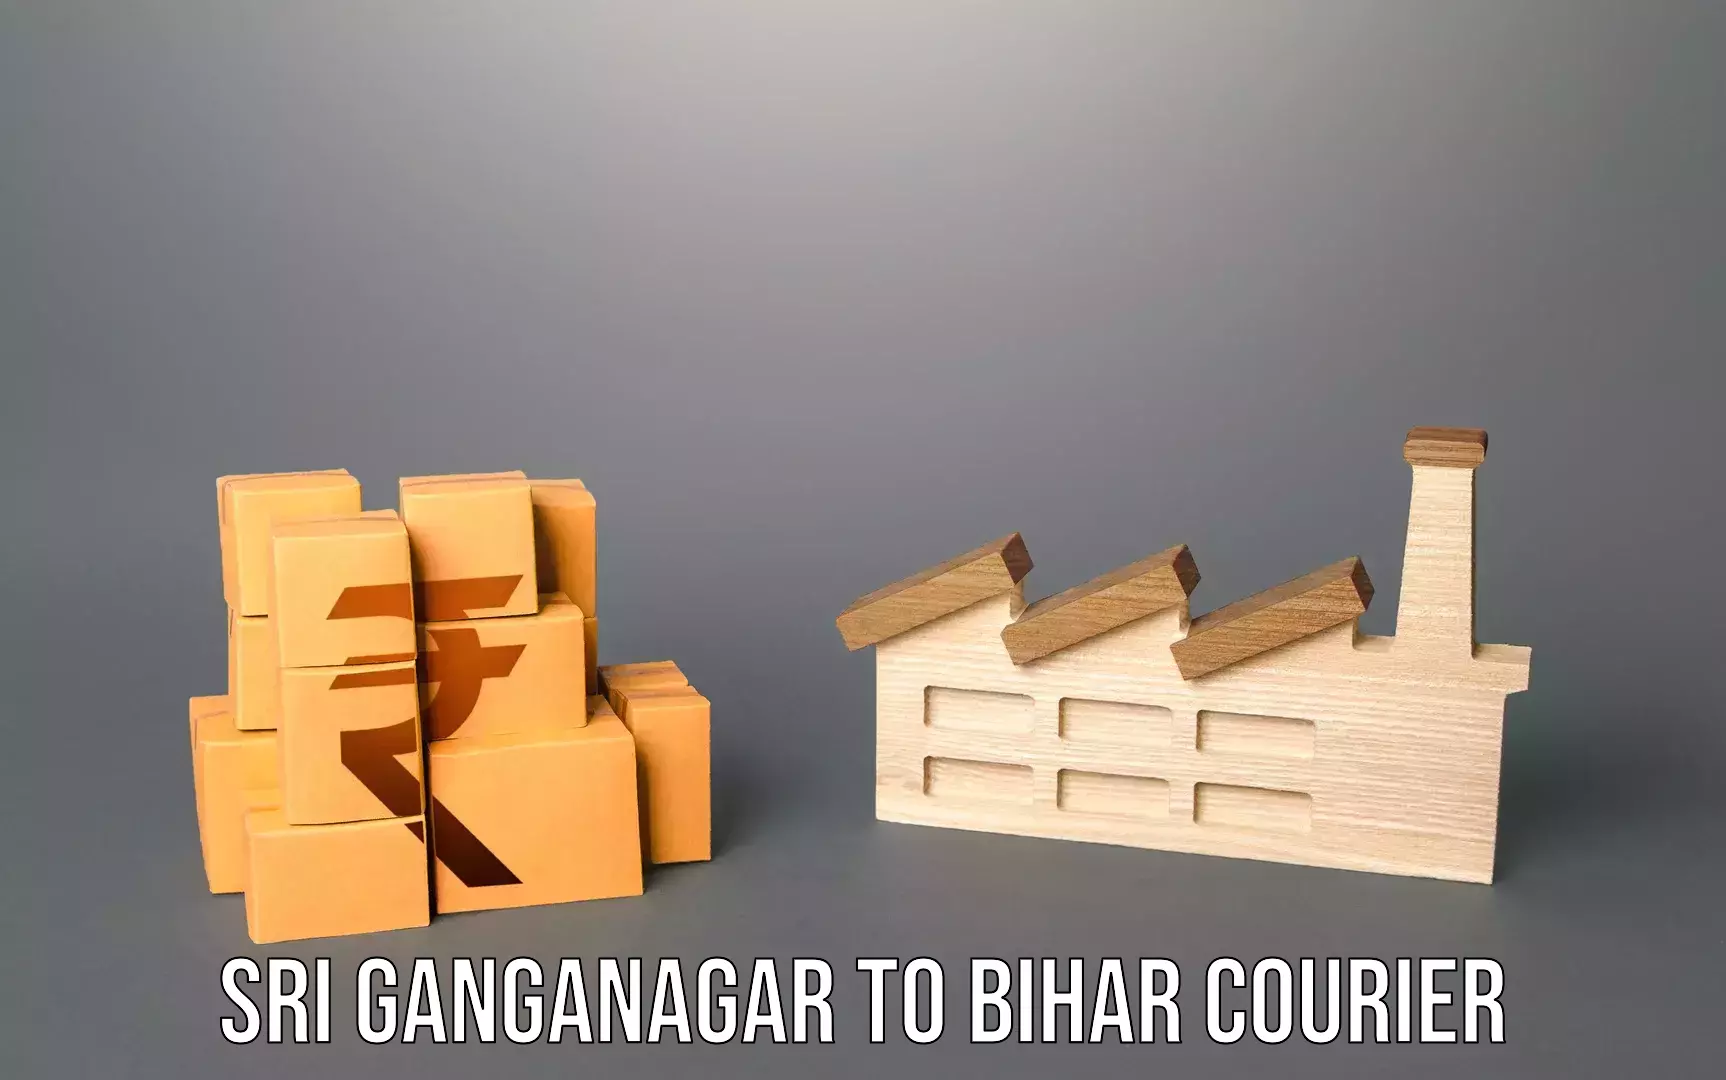 Luggage transport company Sri Ganganagar to Andar Siwan